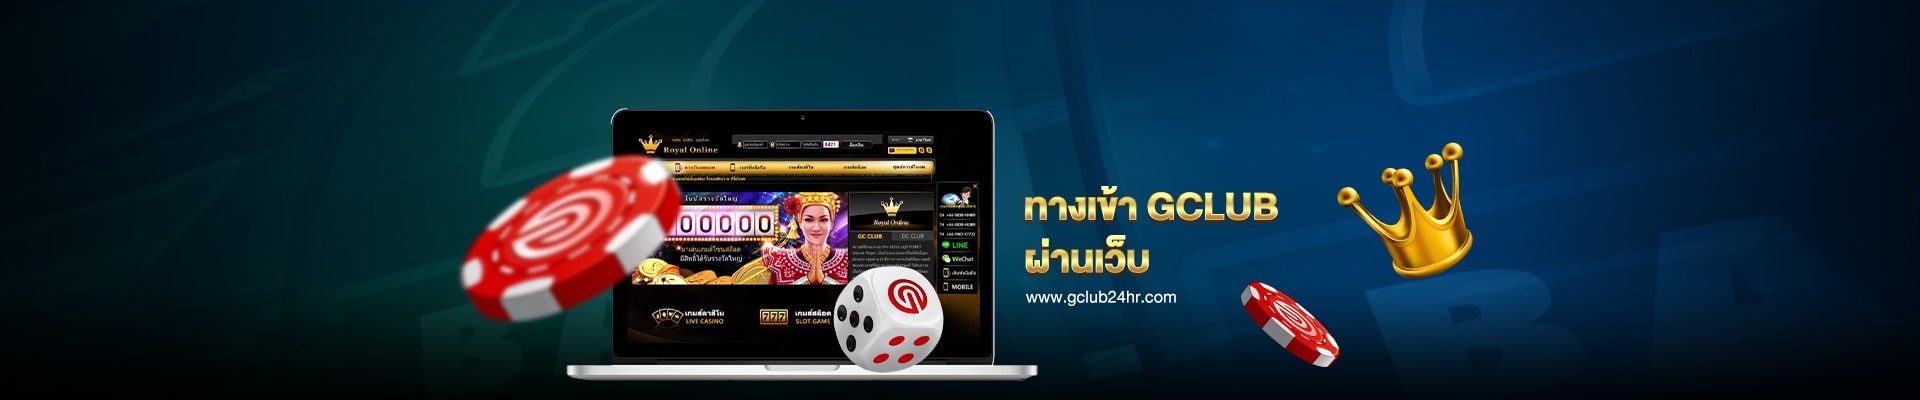 gclub24hr_casino_online_gclub